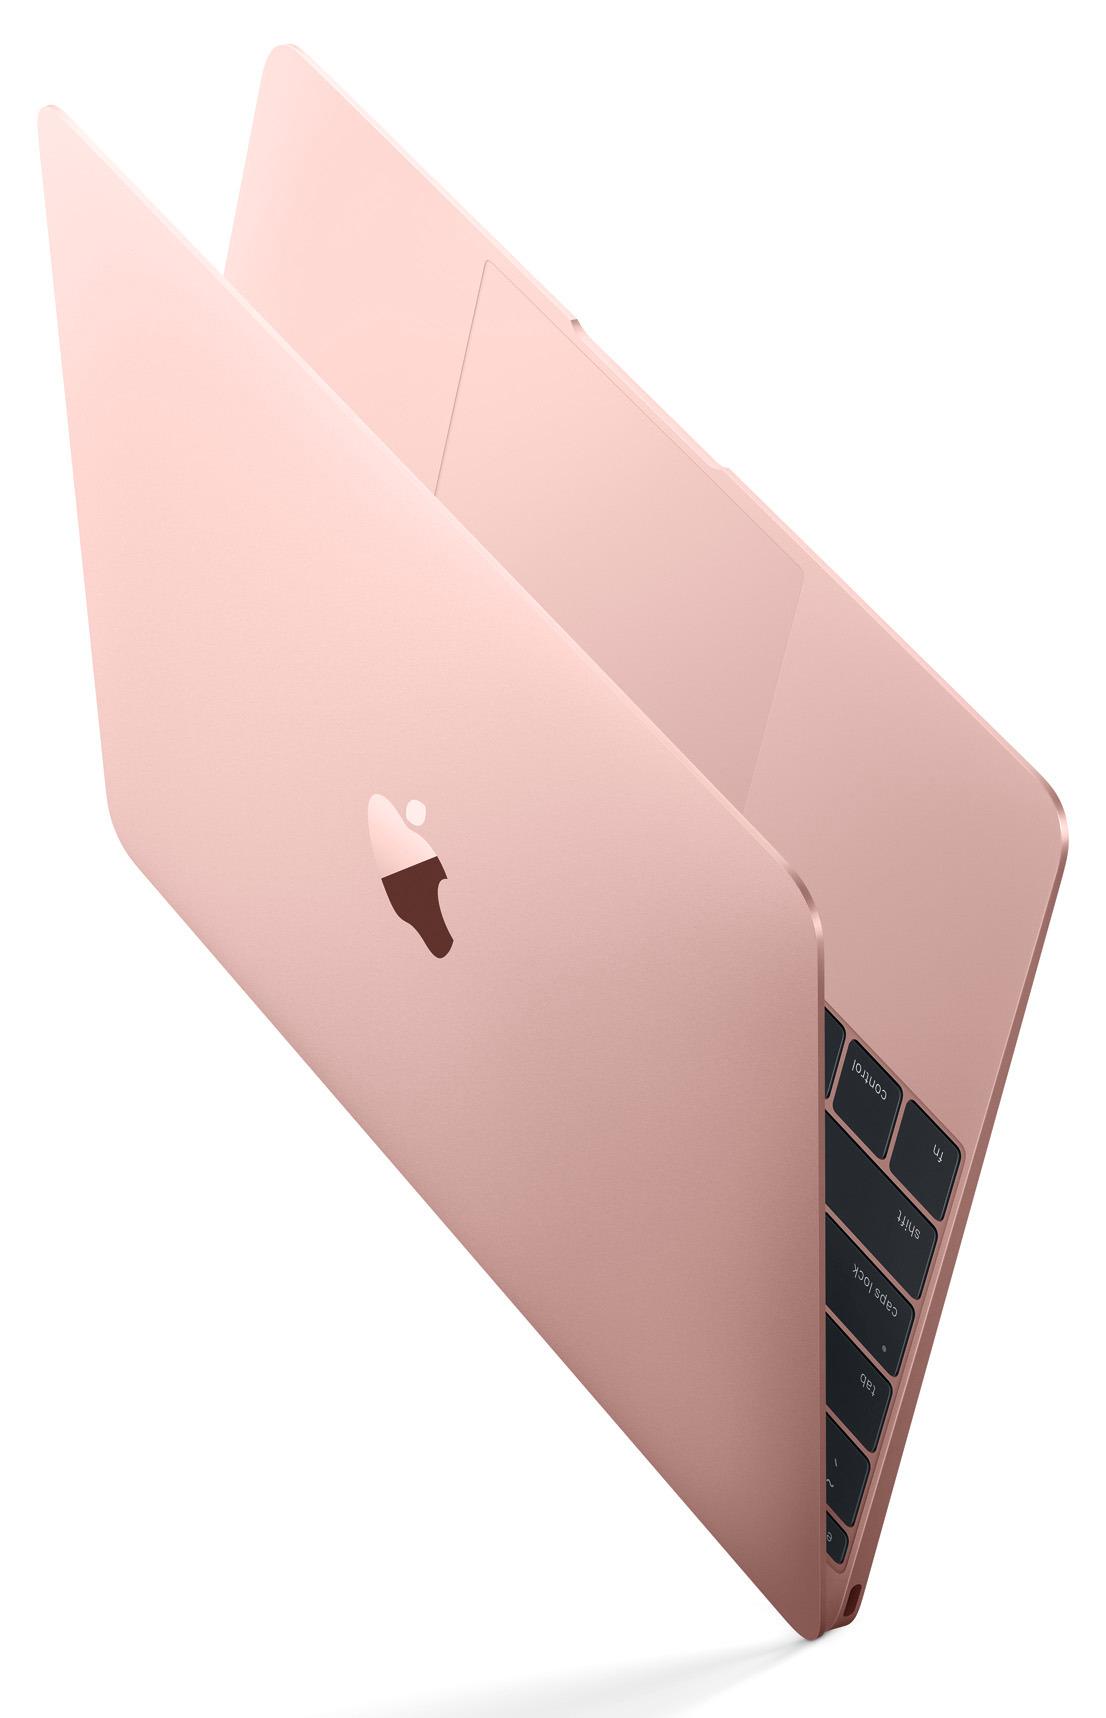 2016-versjonen av MacBook 12" fås nå i rosa.